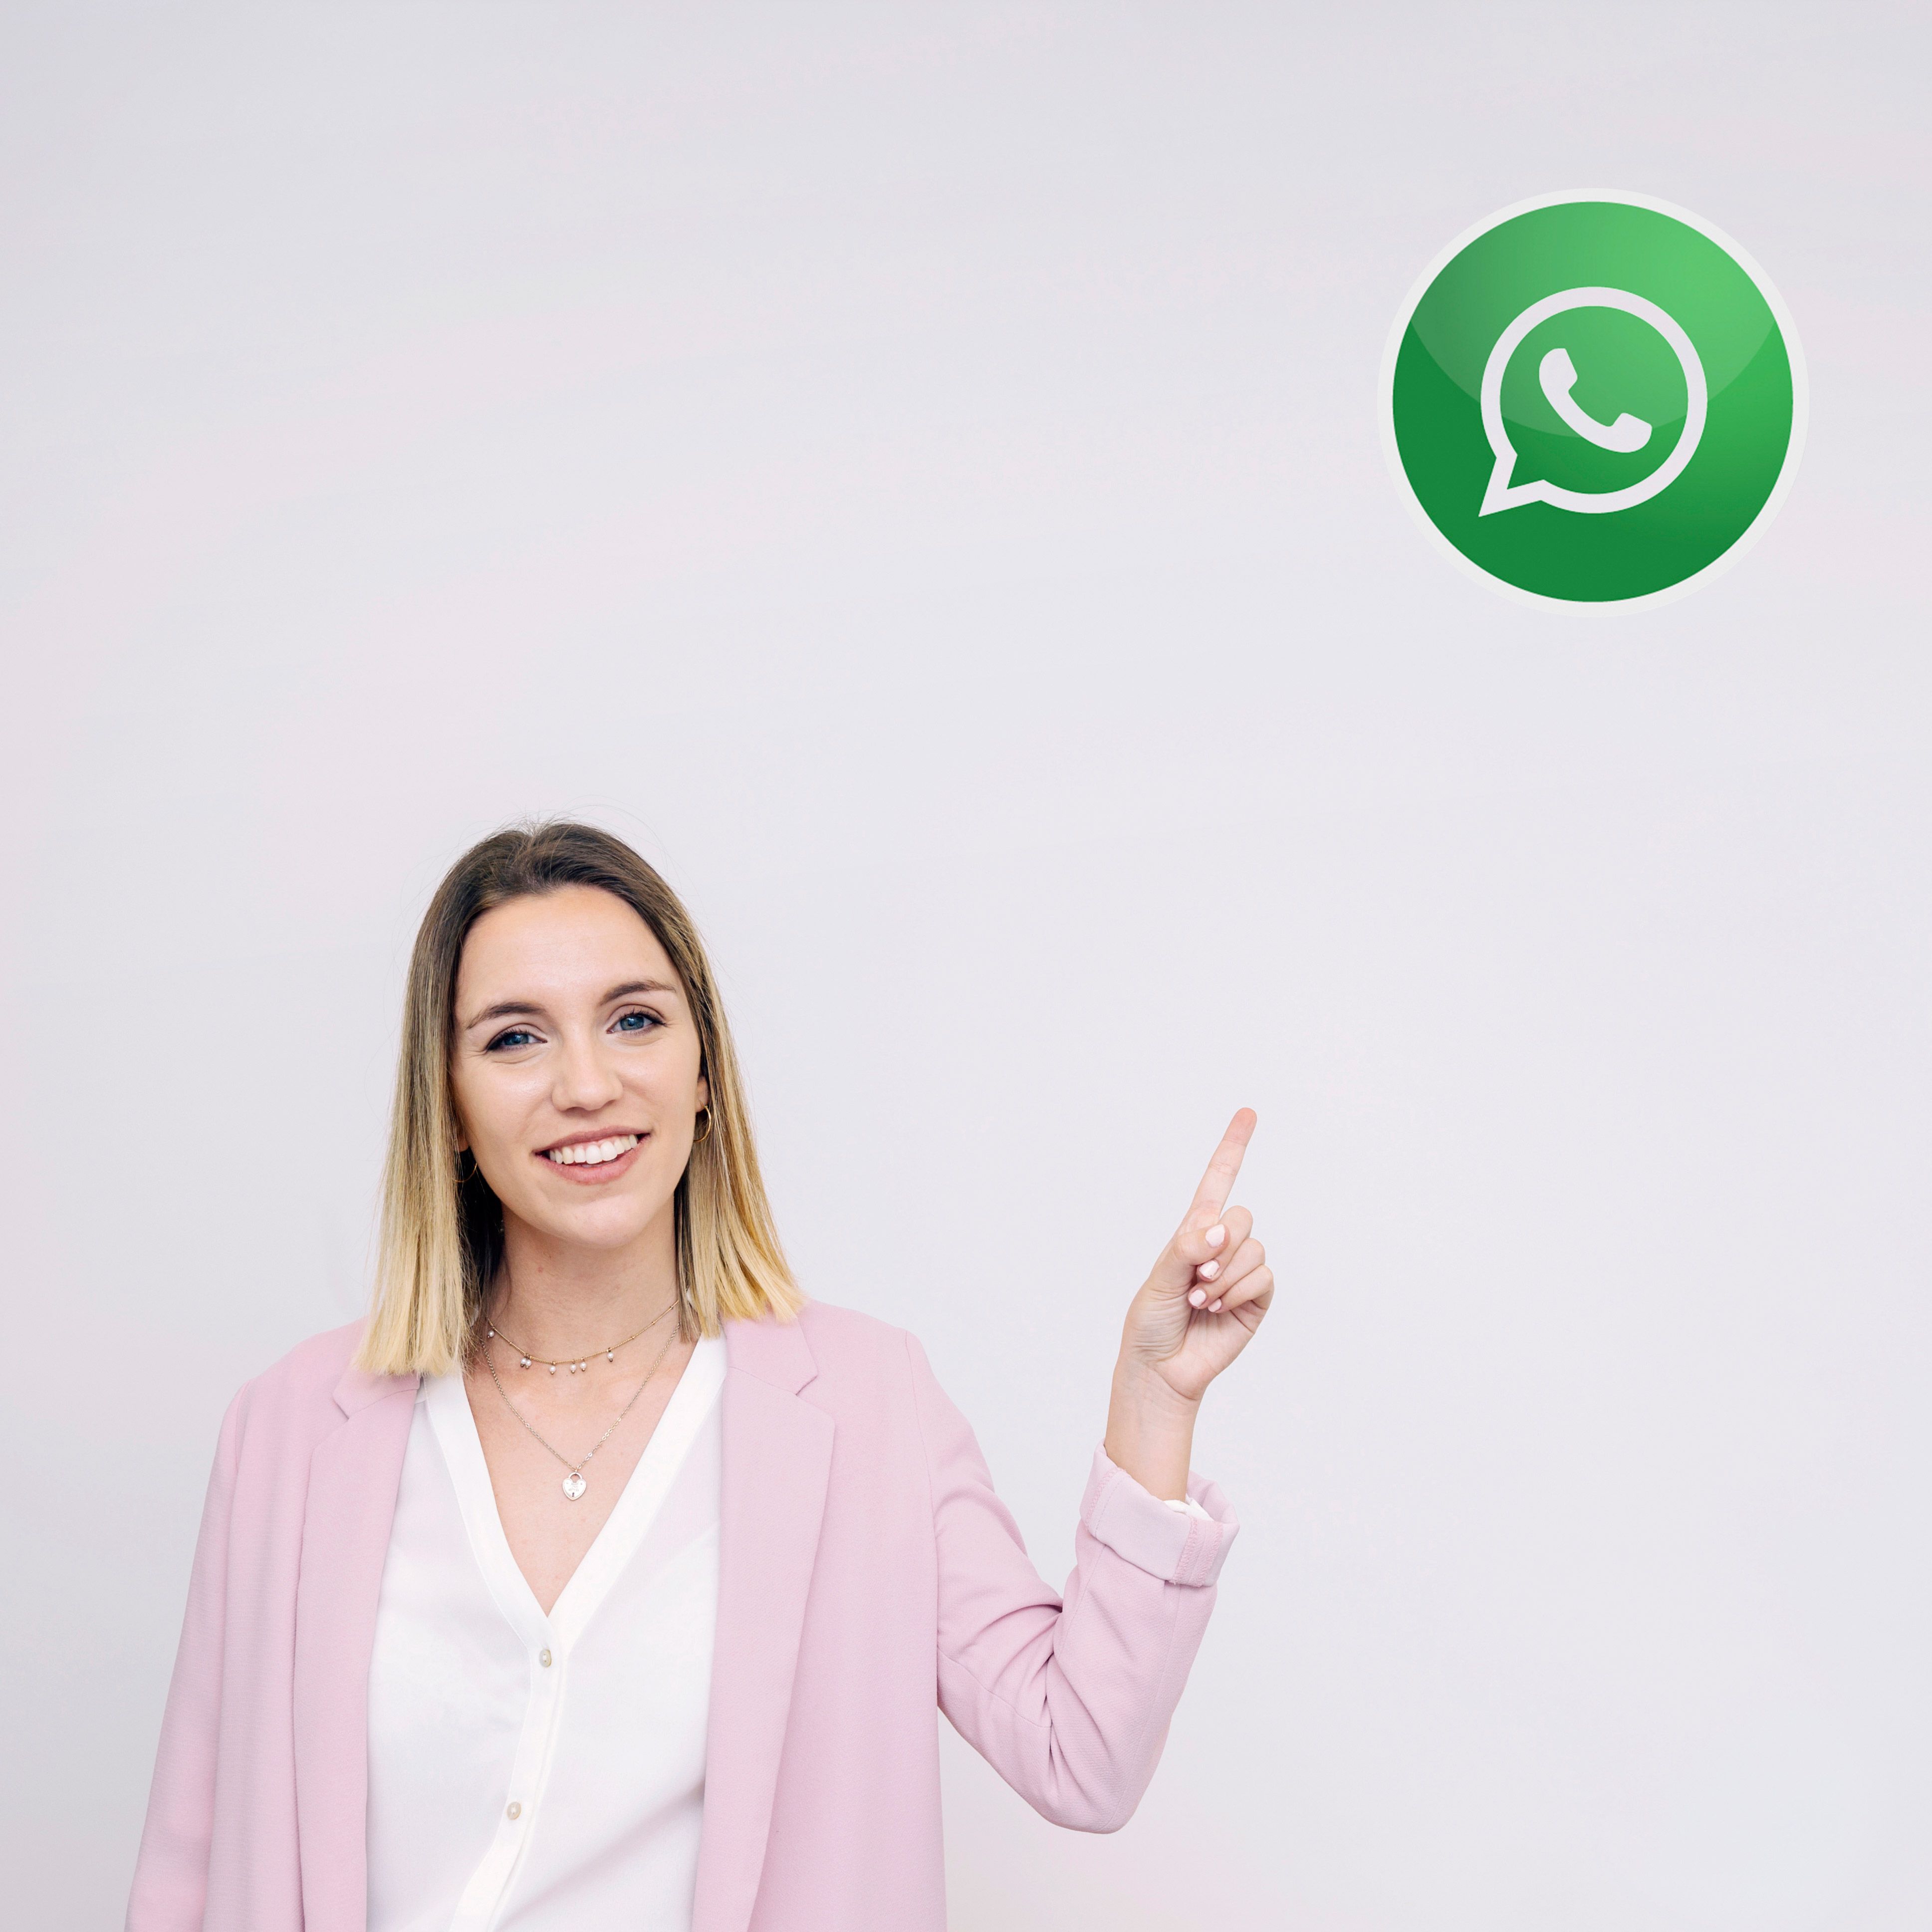 Millones de empresas de todo el mundo utilizan WhatsApp para comunicarse con sus clientes a diario